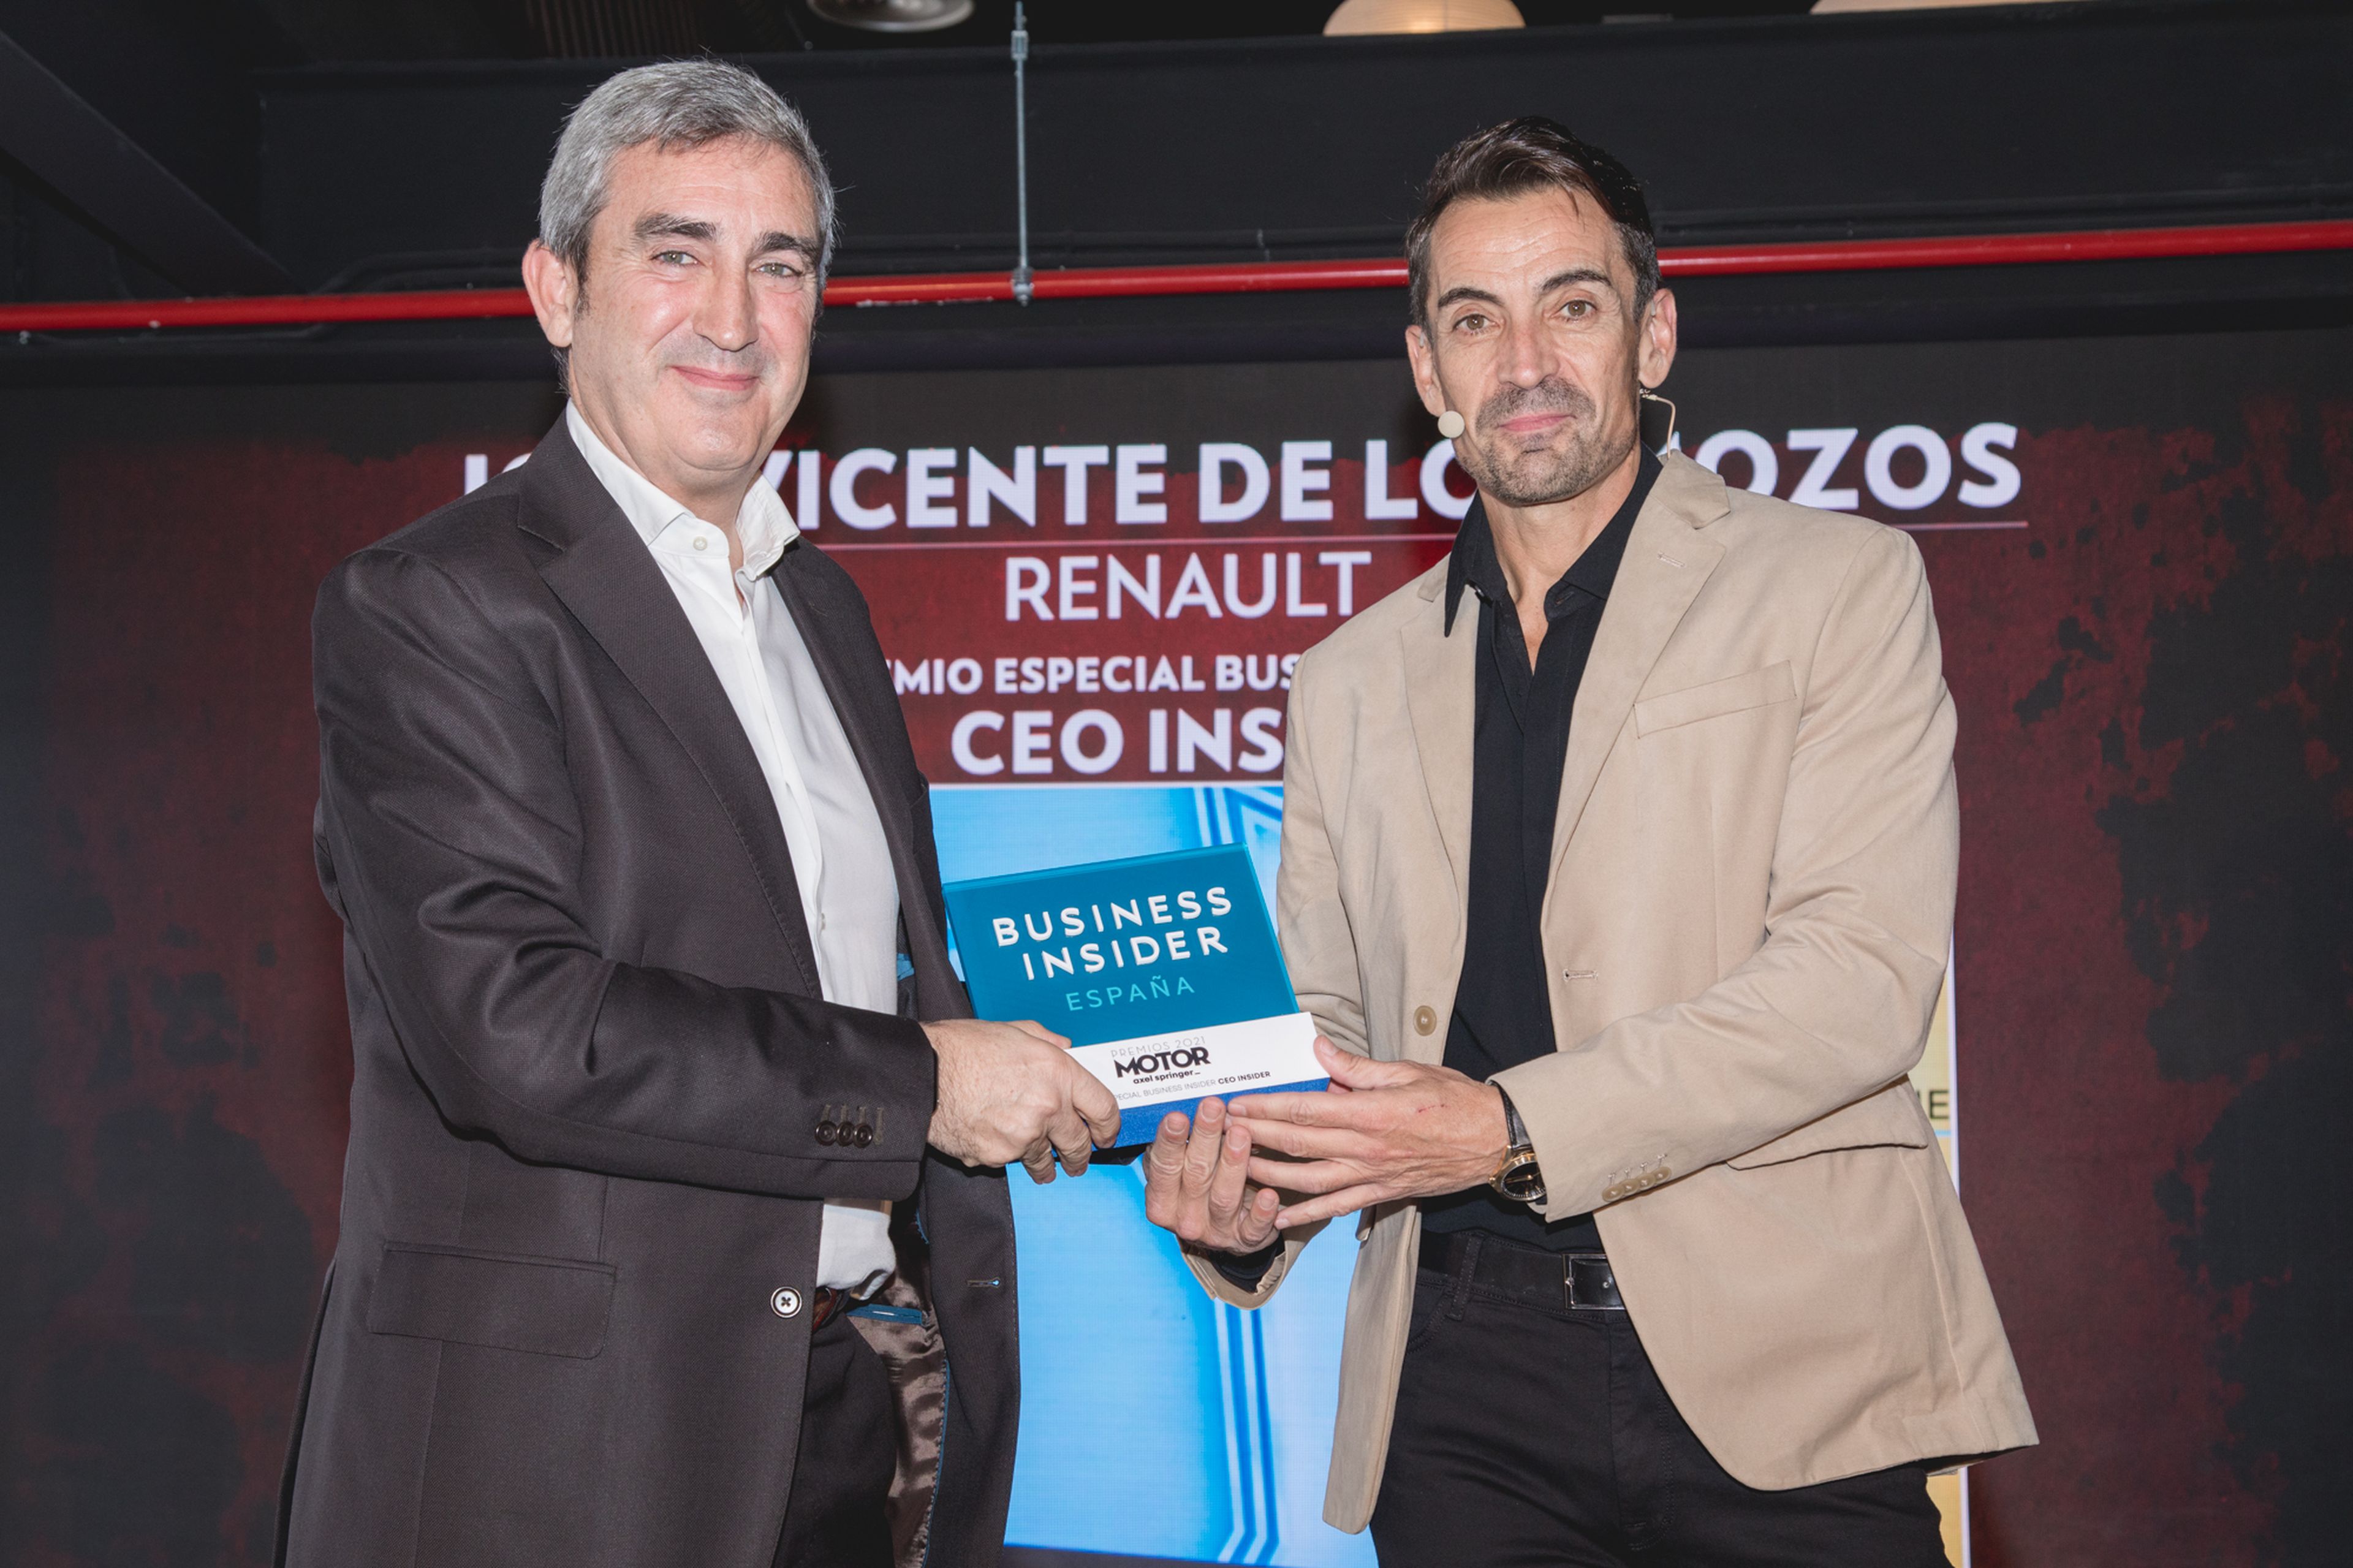 Jesús Presa (izq.), director de Relaciones Institucionales de Renault España, recibe el premio en nombre de José Vicente de los Mozos de manos de Manuel del Campo, CEO de Axel Springer España.